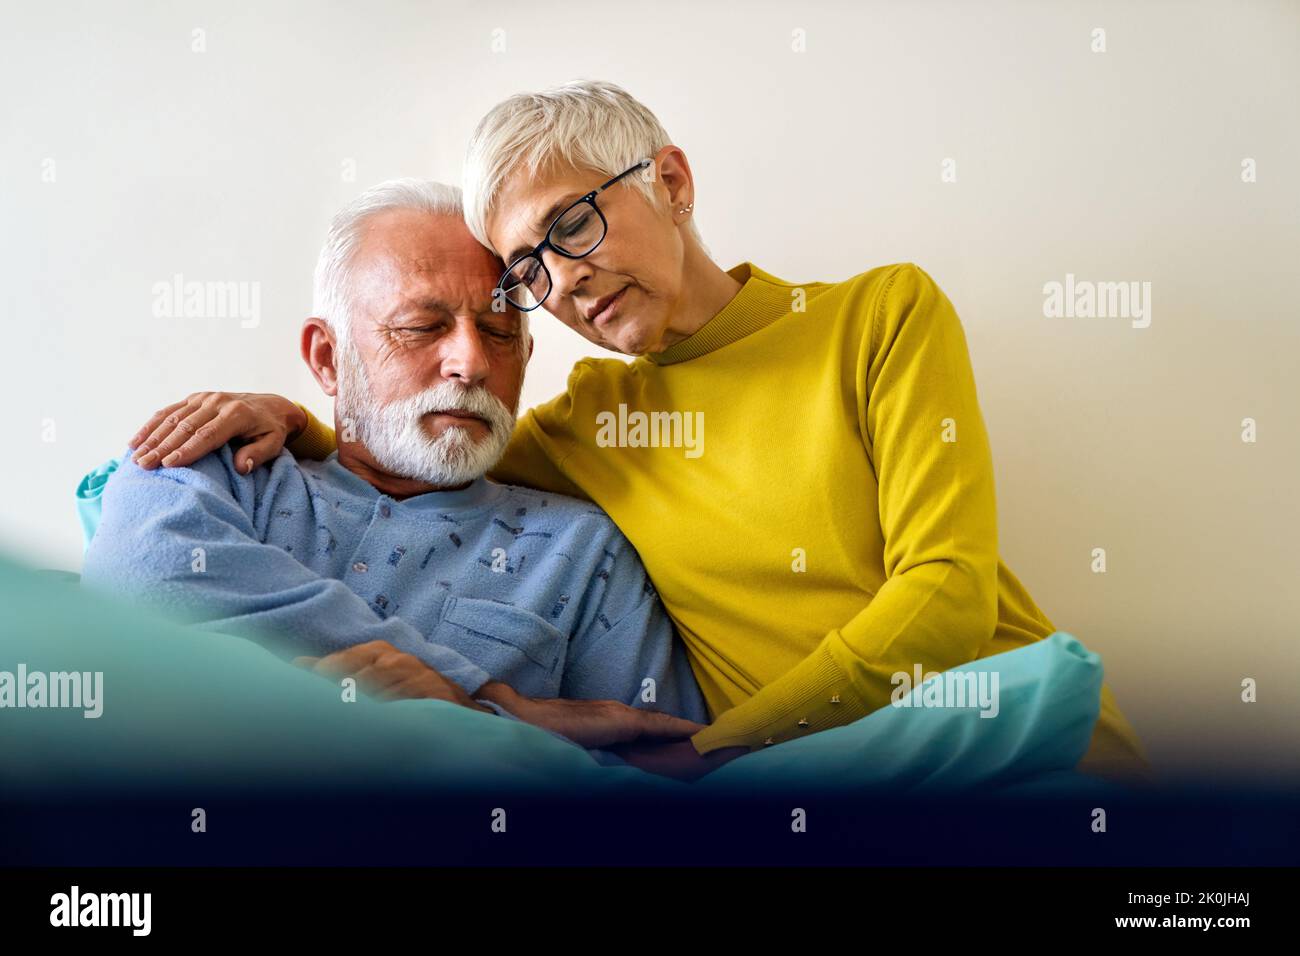 Medizin, Unterstützung, Gesundheit und Menschen Konzept. Ältere Frau besucht ihren kranken Mann im Krankenhaus Stockfoto